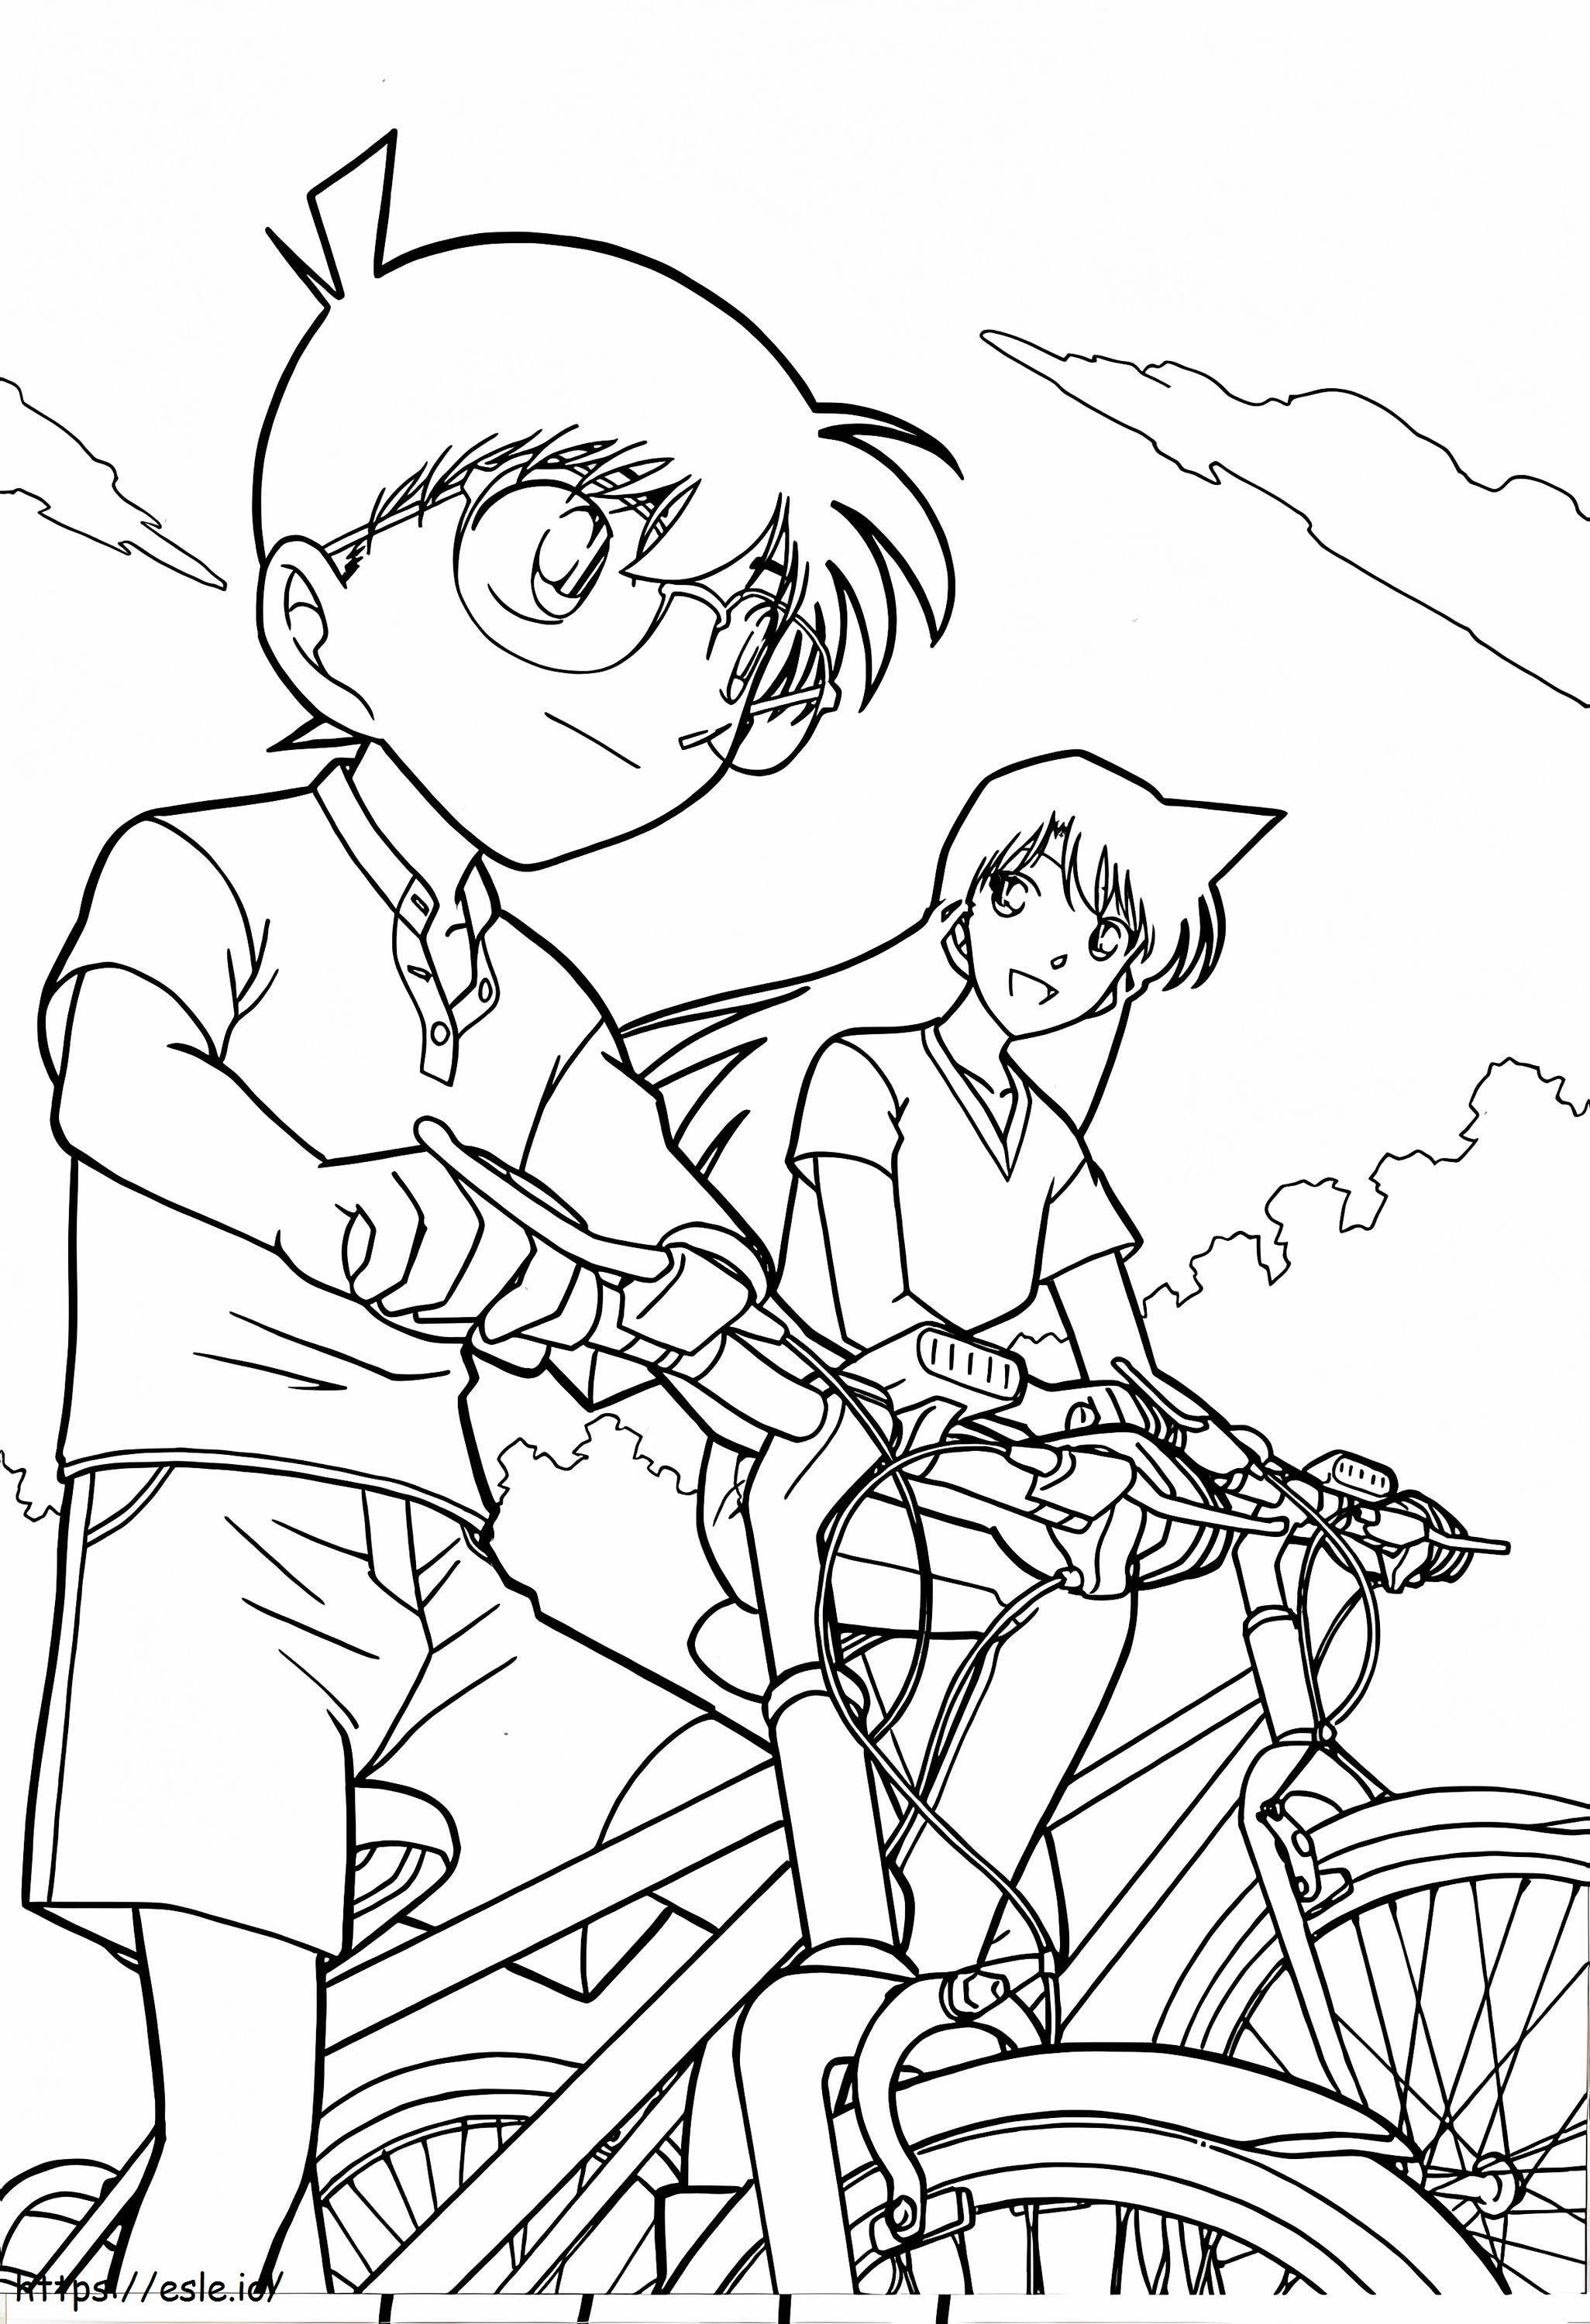 Conan en rende op een fiets kleurplaat kleurplaat